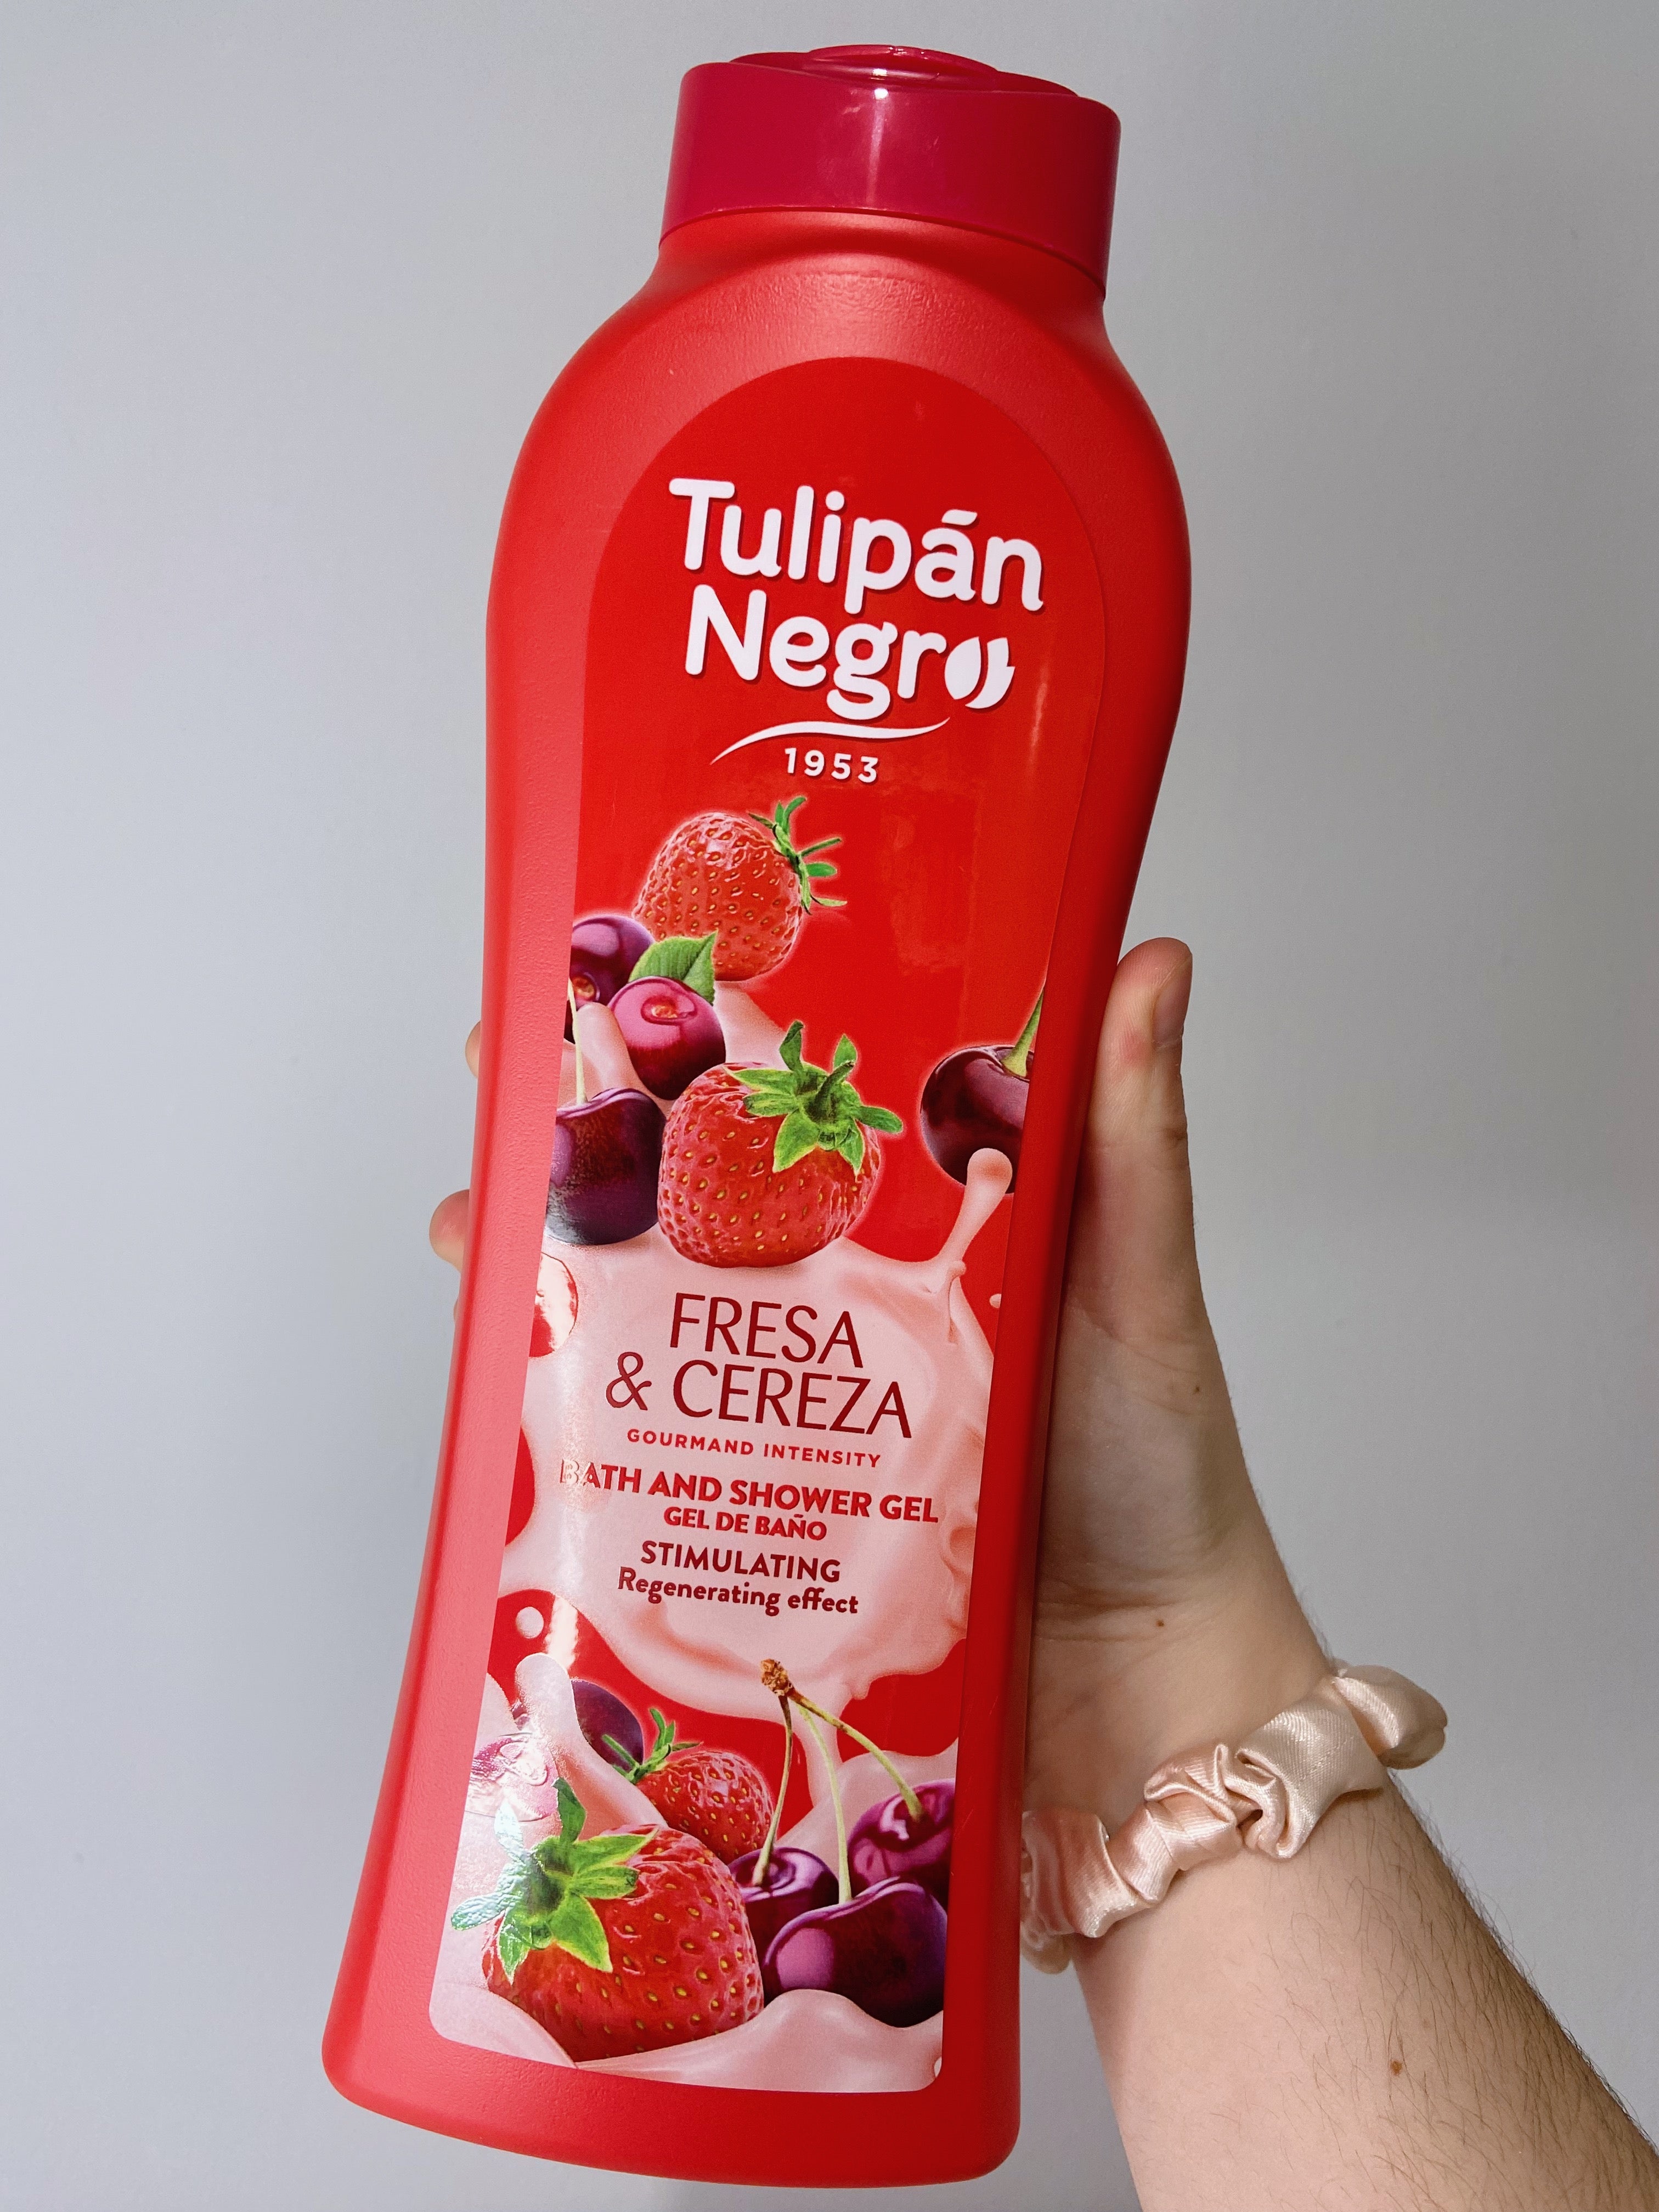 Tulipán Negro Leche Merengada - Gel de baño